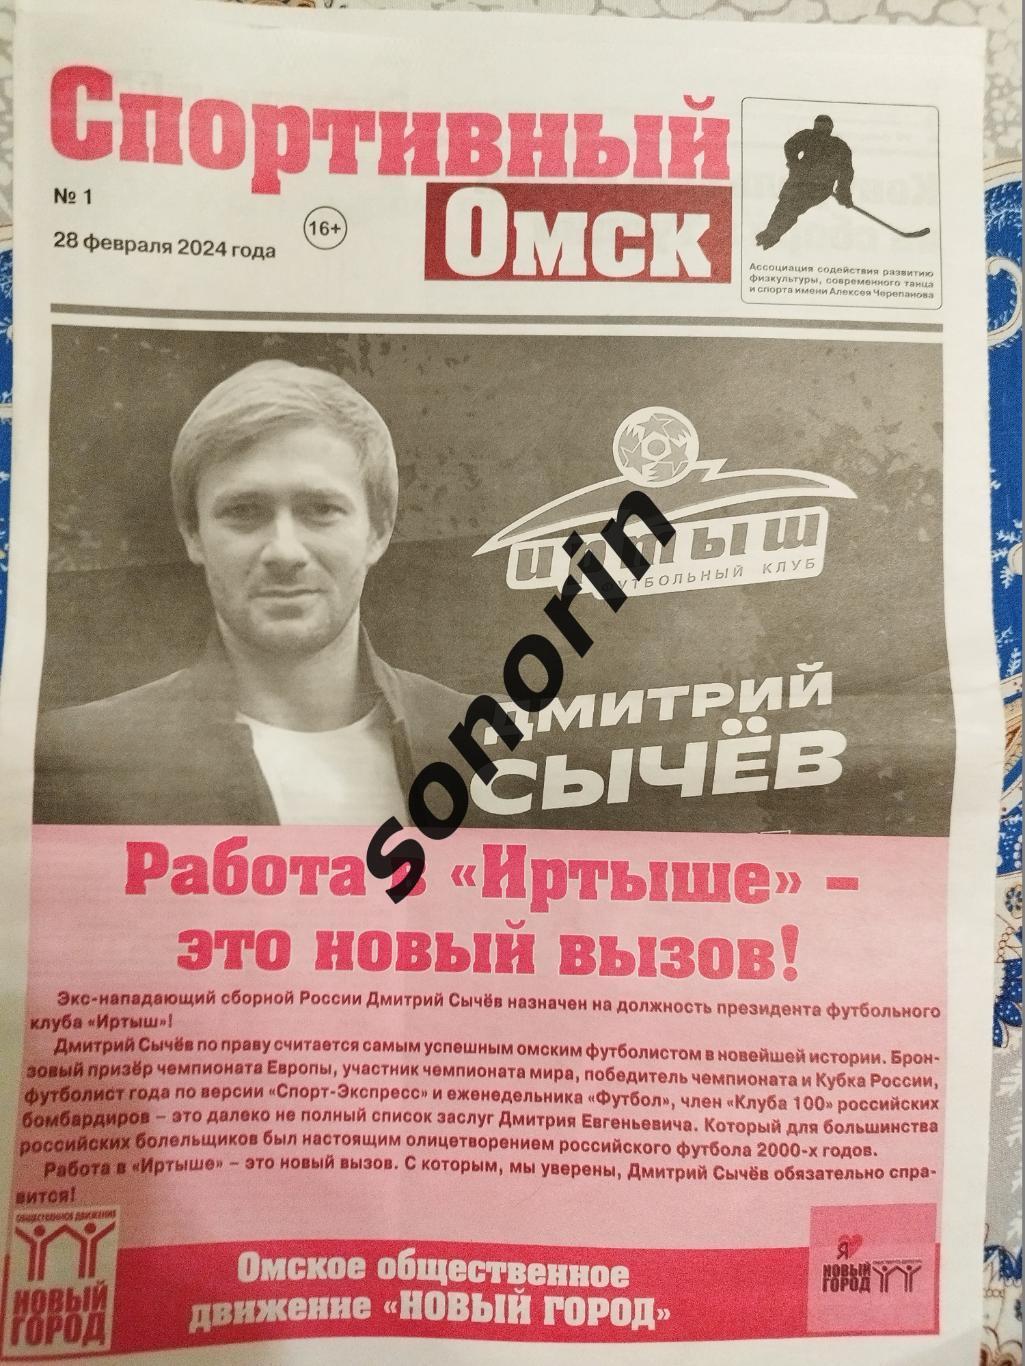 Спортивная газета, Омск, №1, 28 февраля 2024